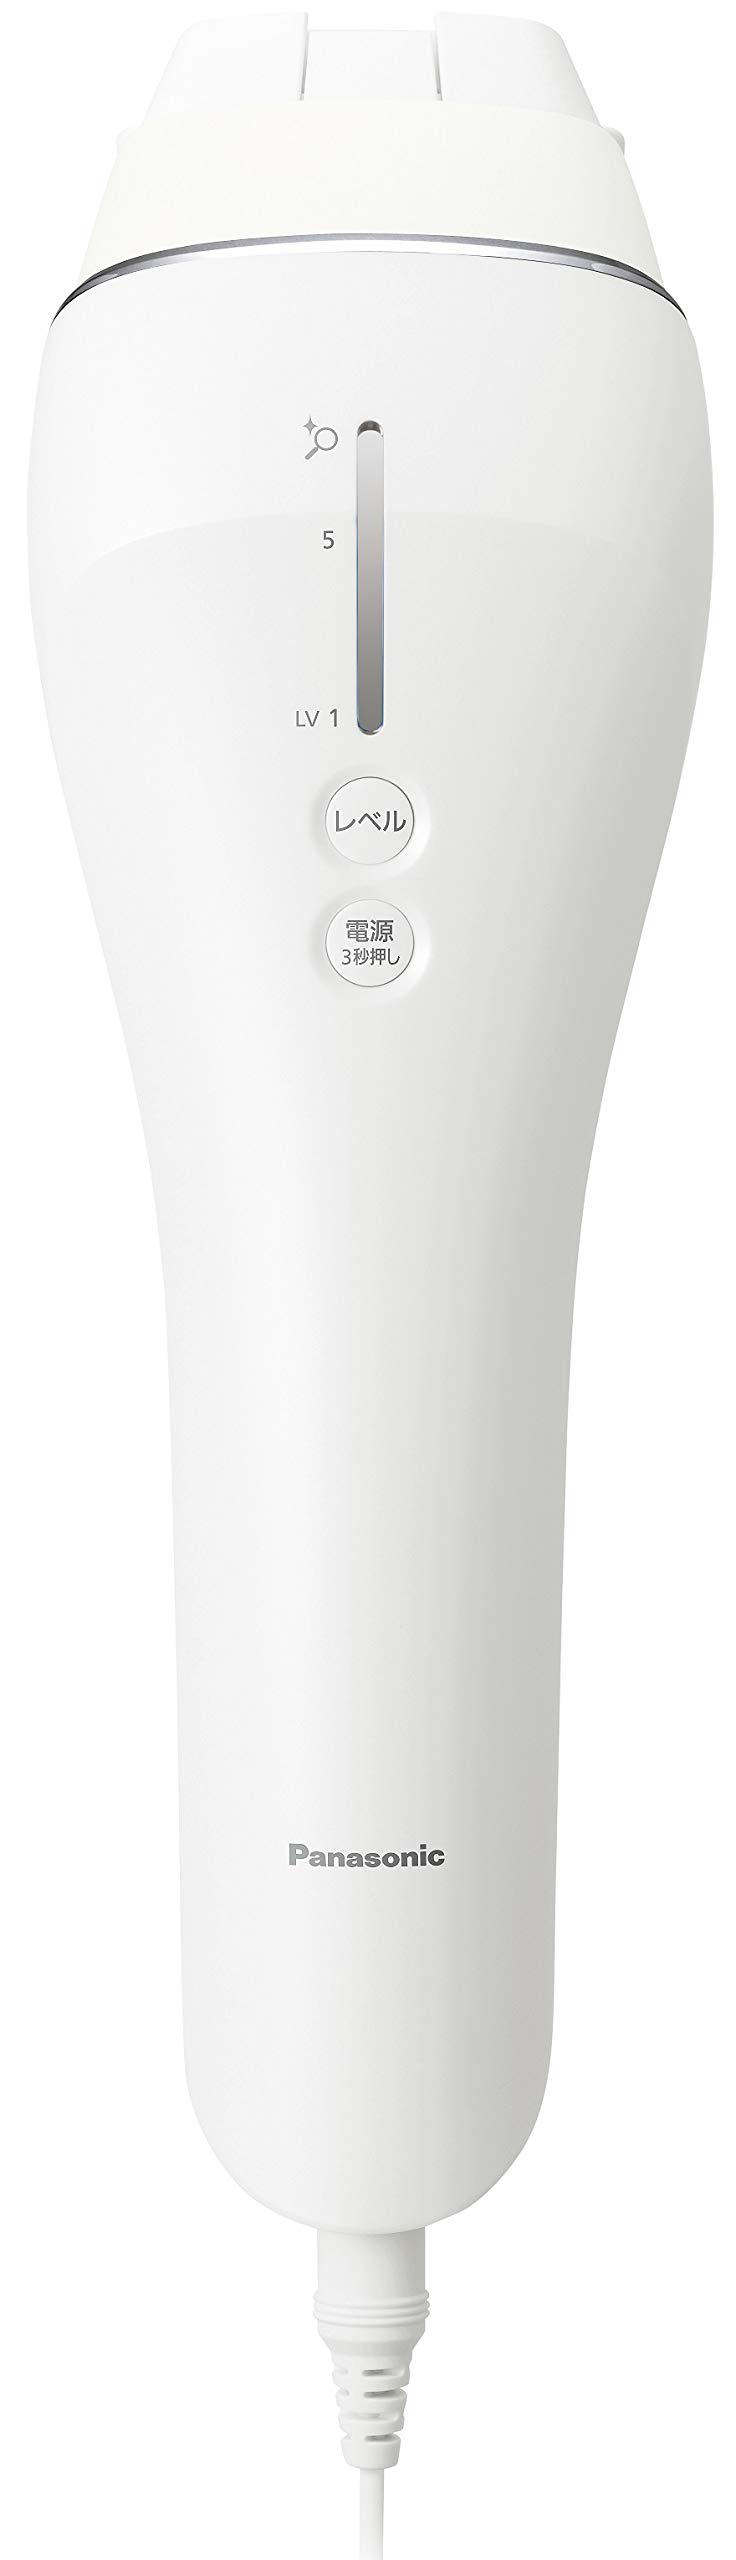 パナソニック 光美容器 光エステ ボディフェイス用 ハイパワータイプ シルバー調 ES-WP81-S